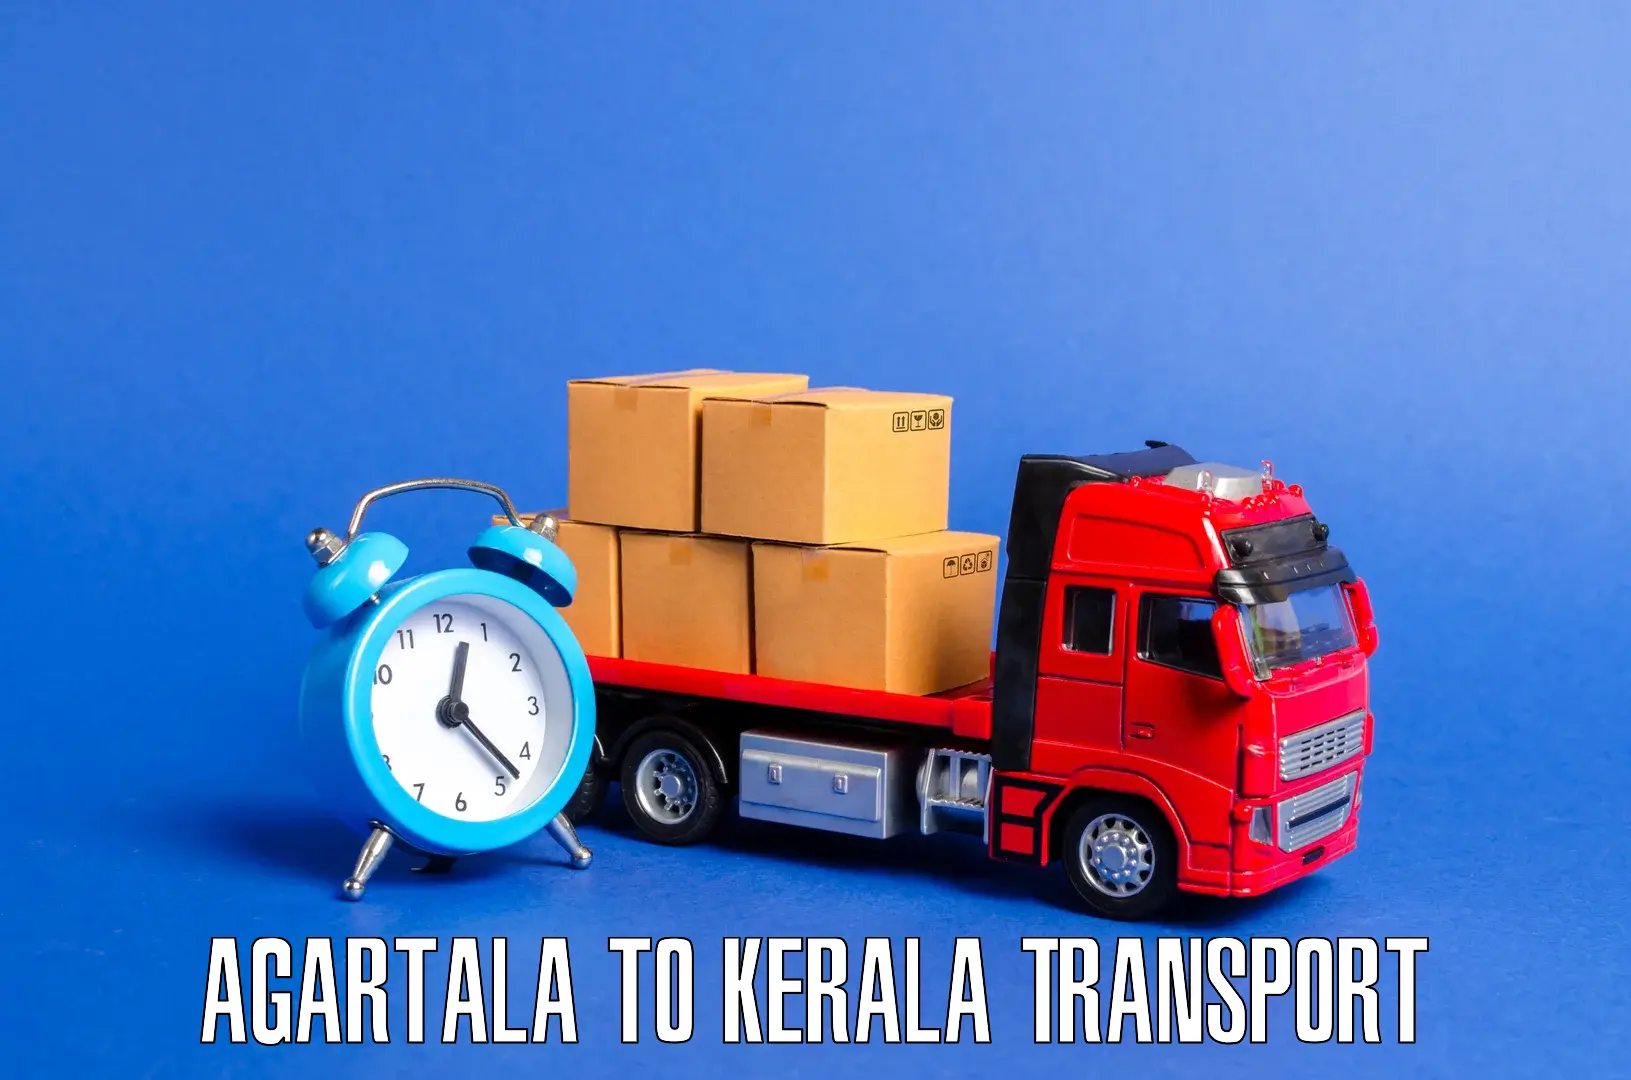 Shipping partner Agartala to IIT Palakkad